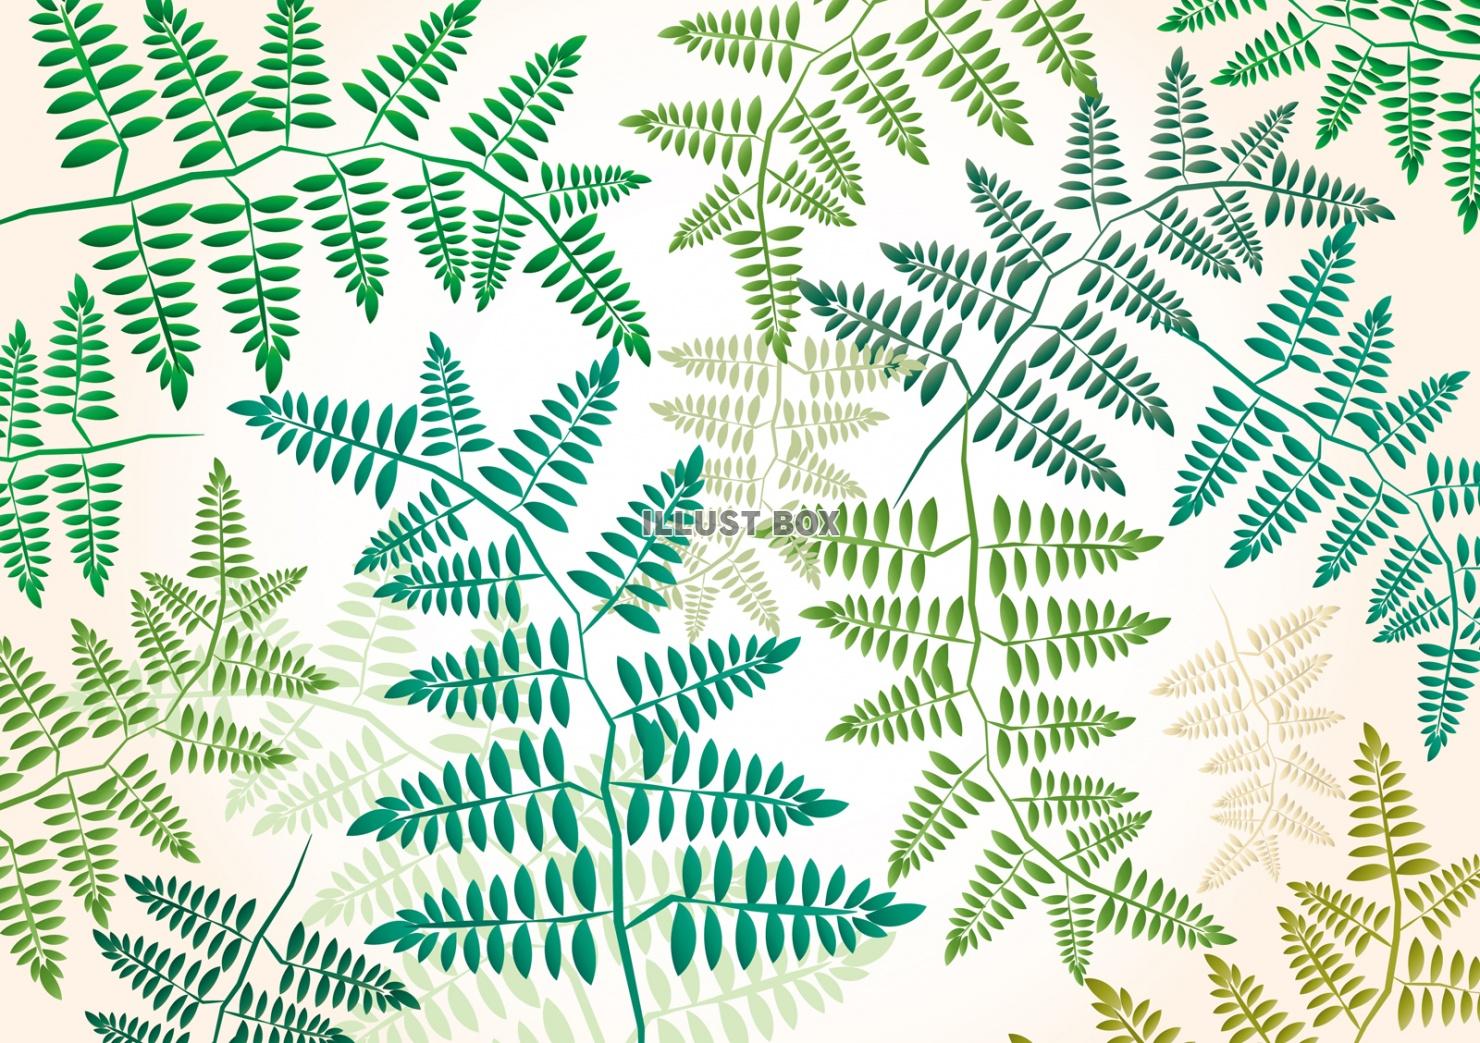 無料イラスト 葉背景壁紙植物葉っぱ 緑イラストグリーン シンプル